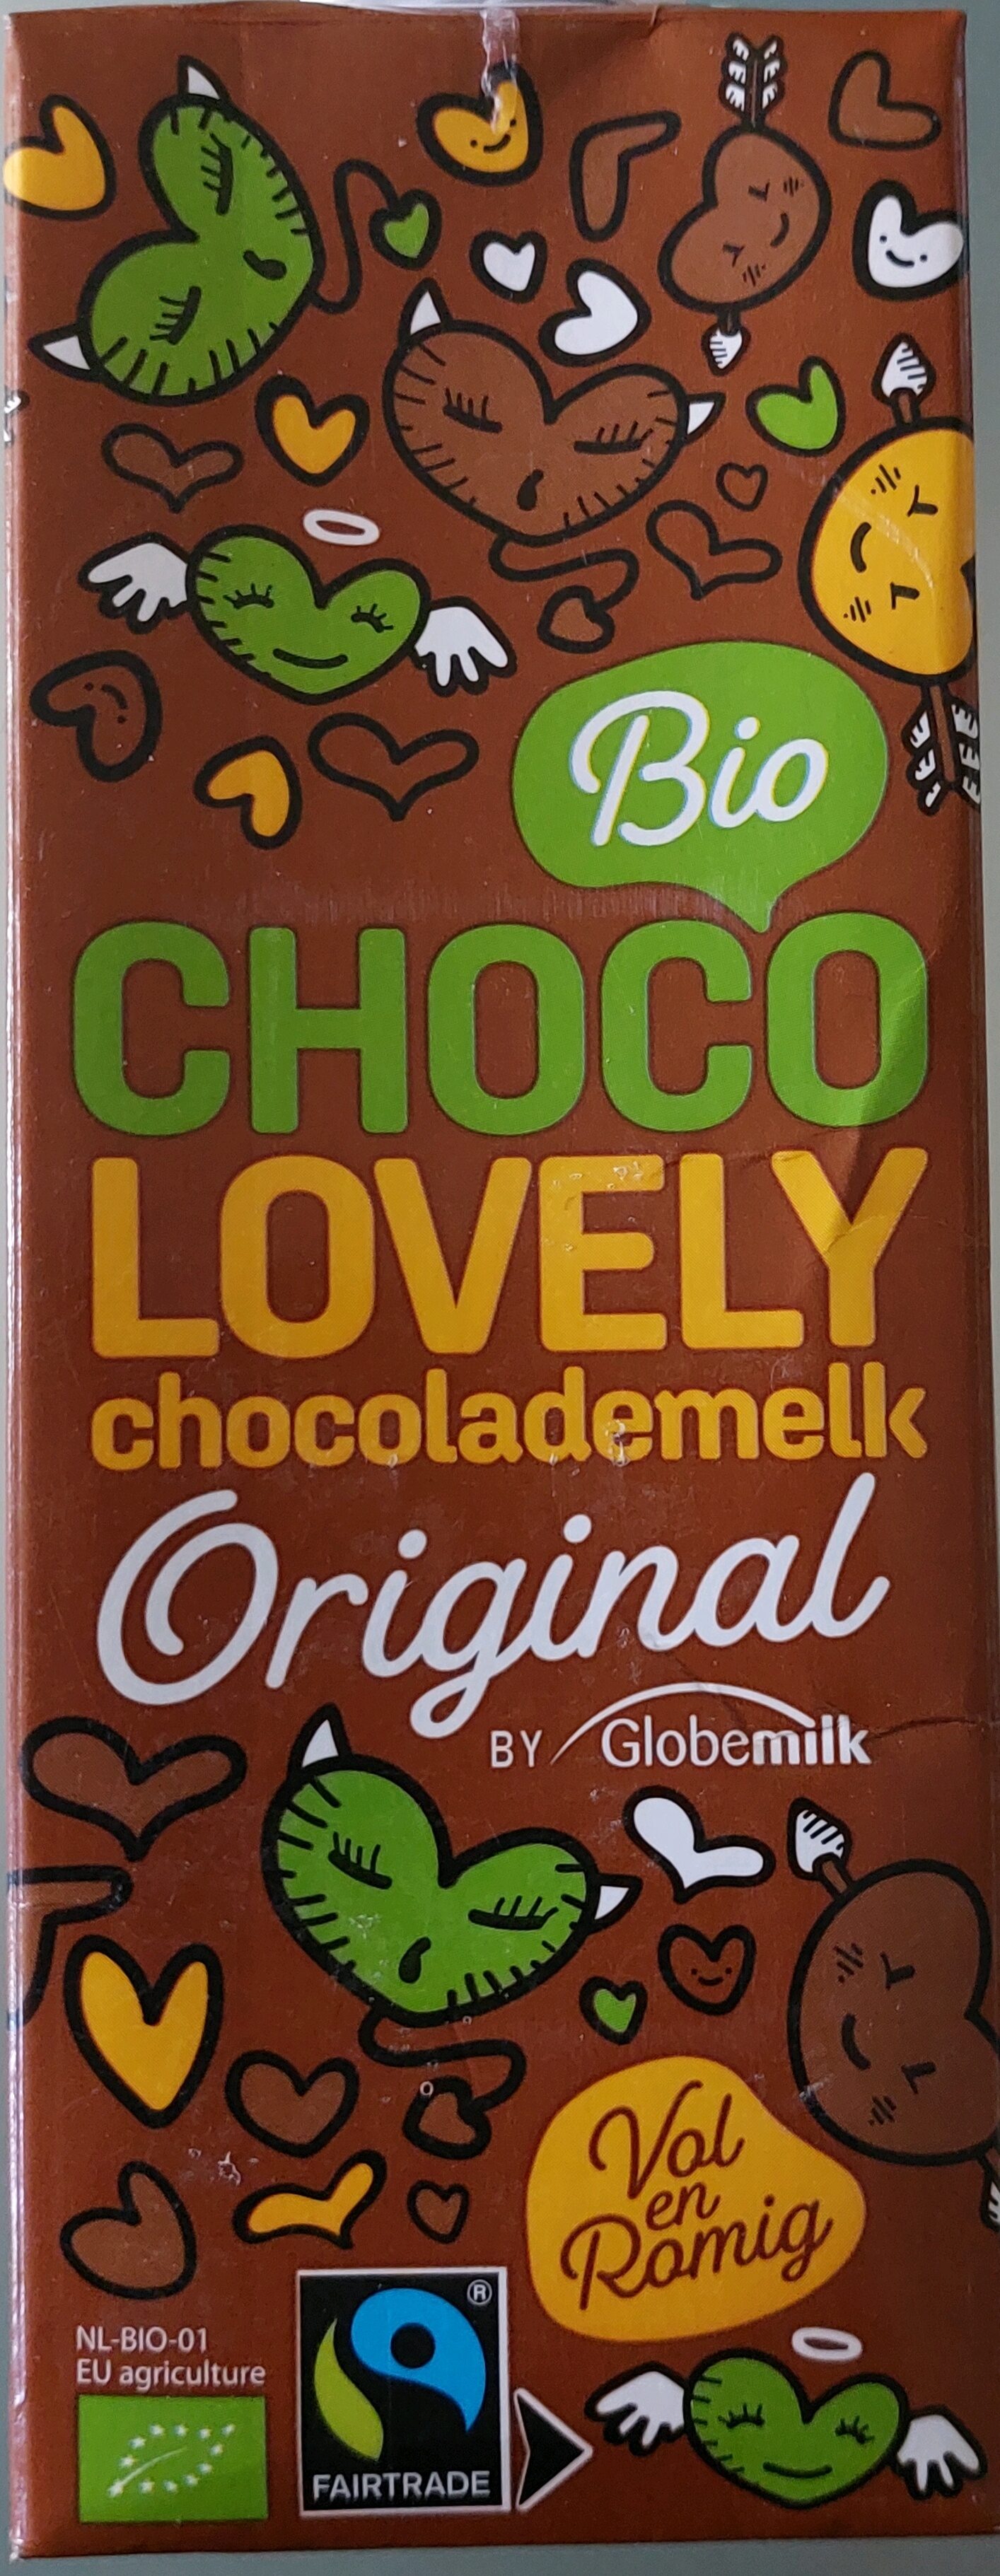 Chocolademelk UHT - Product